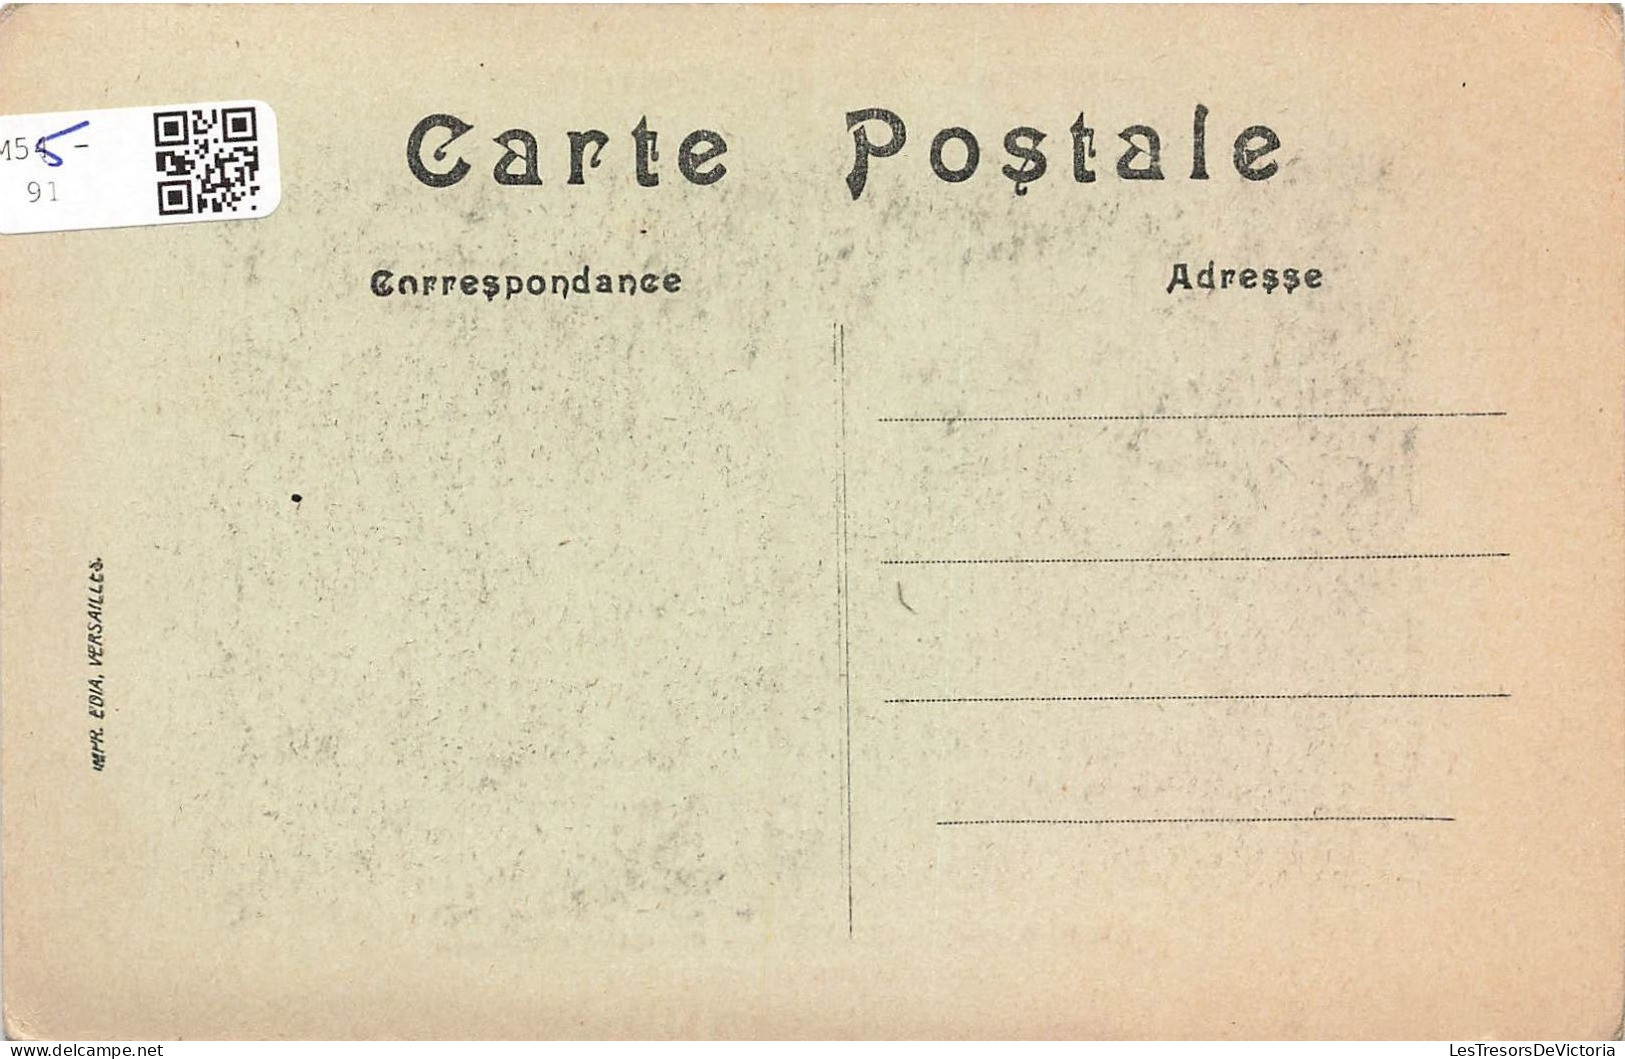 FRANCE - Seppois Le Haut - La Route De M... Après Le Bombardement - Aimé - Vue Générale - Carte Postale Ancienne - Altkirch